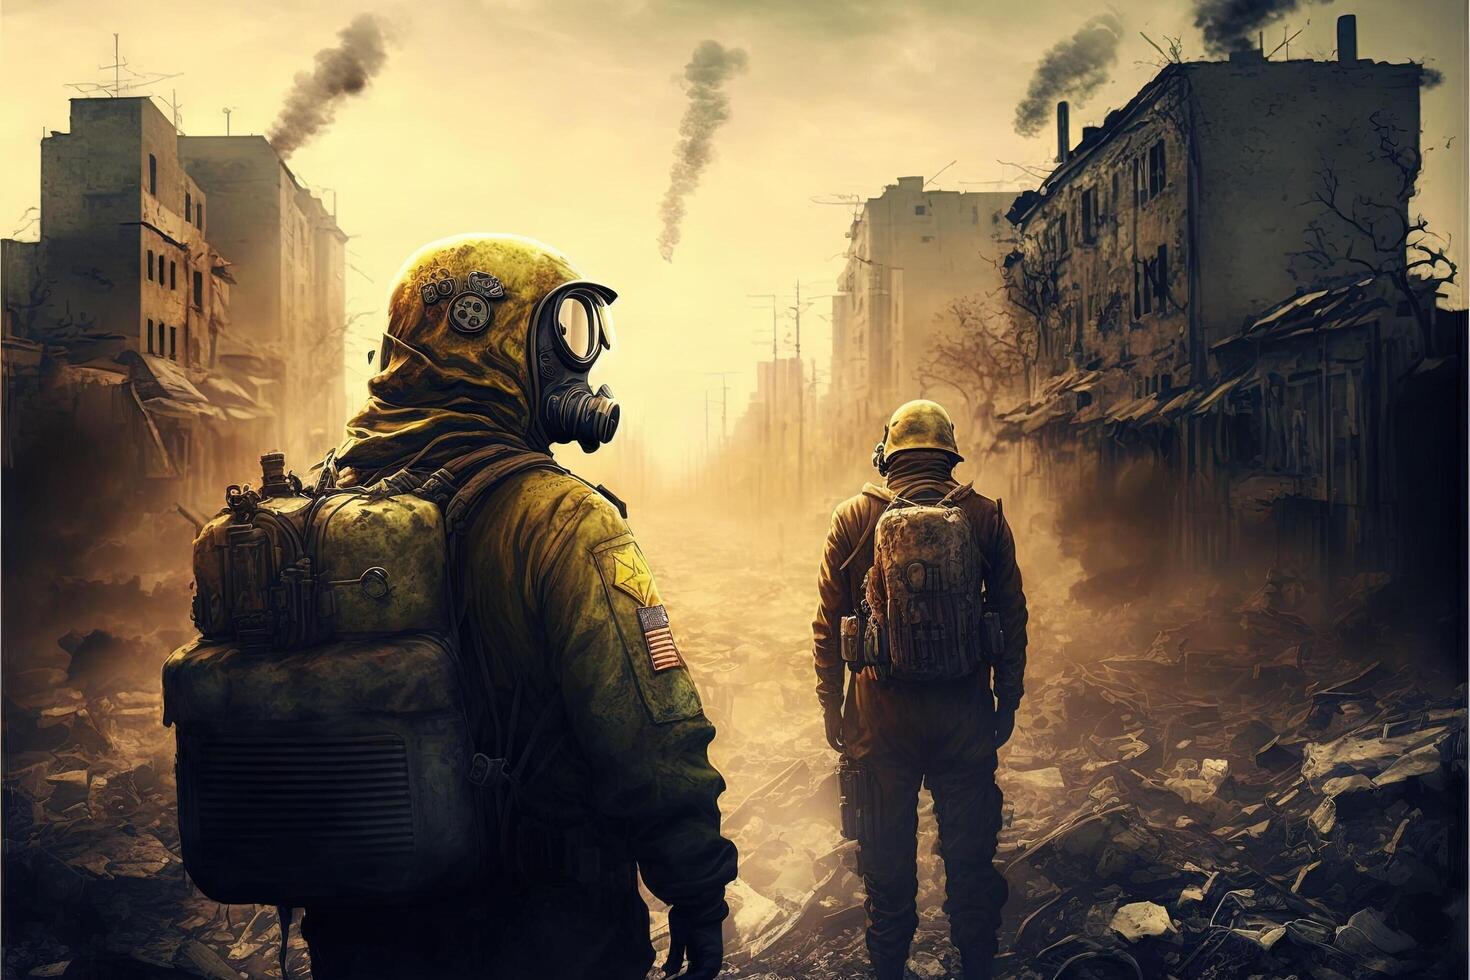 Soldier War in Ukraine explosions on backround illustration photo